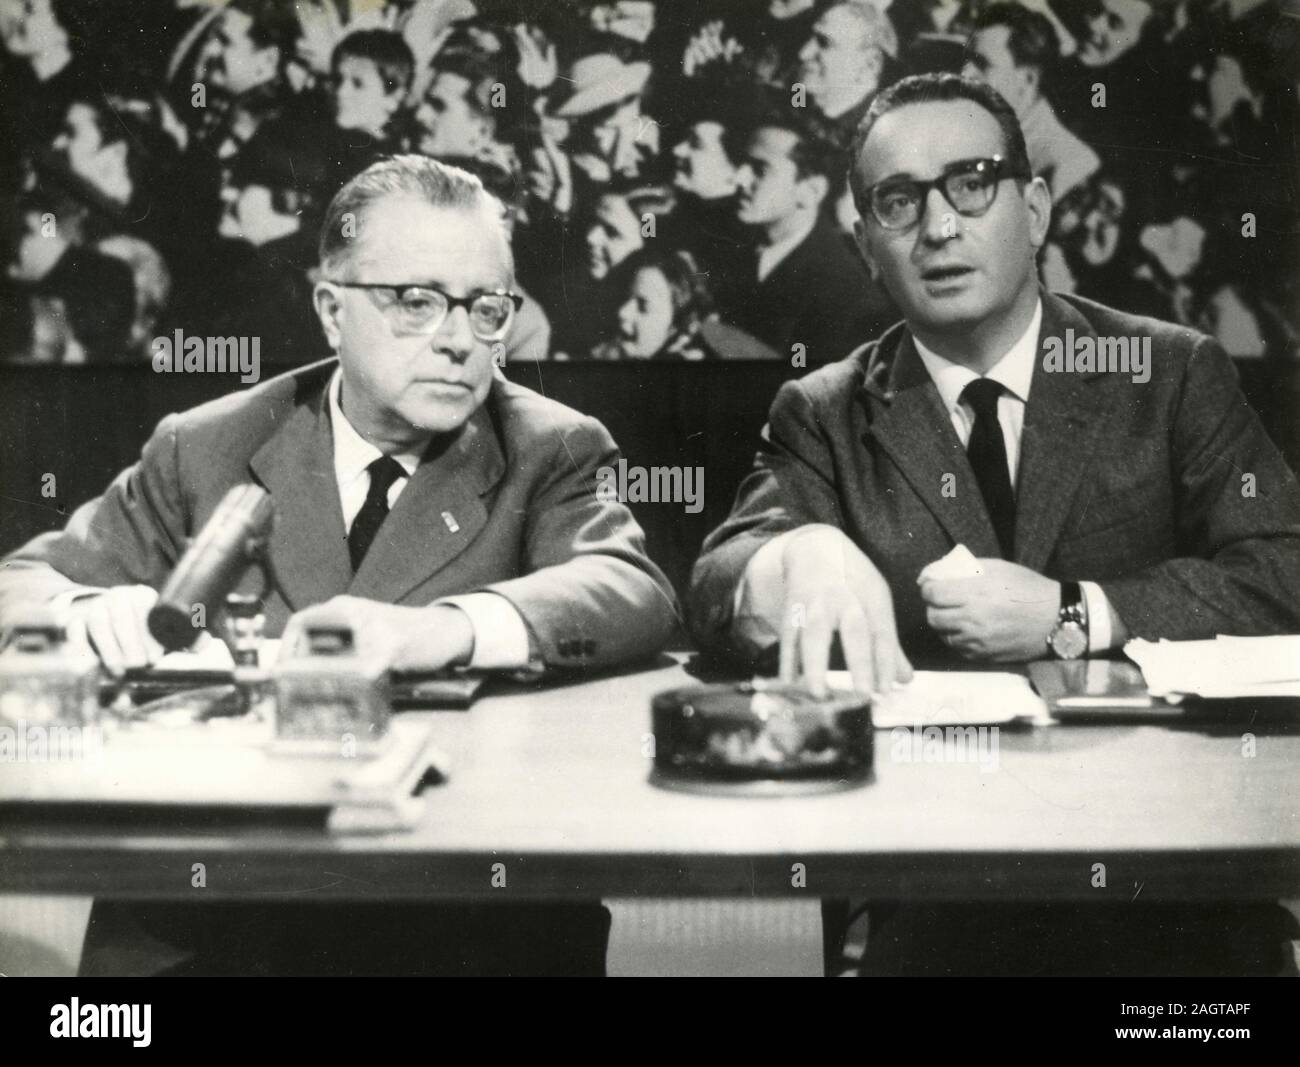 Italienischen Politikers Palmiro Togliatti während einer Konferenz, Italien 1960 Stockfoto